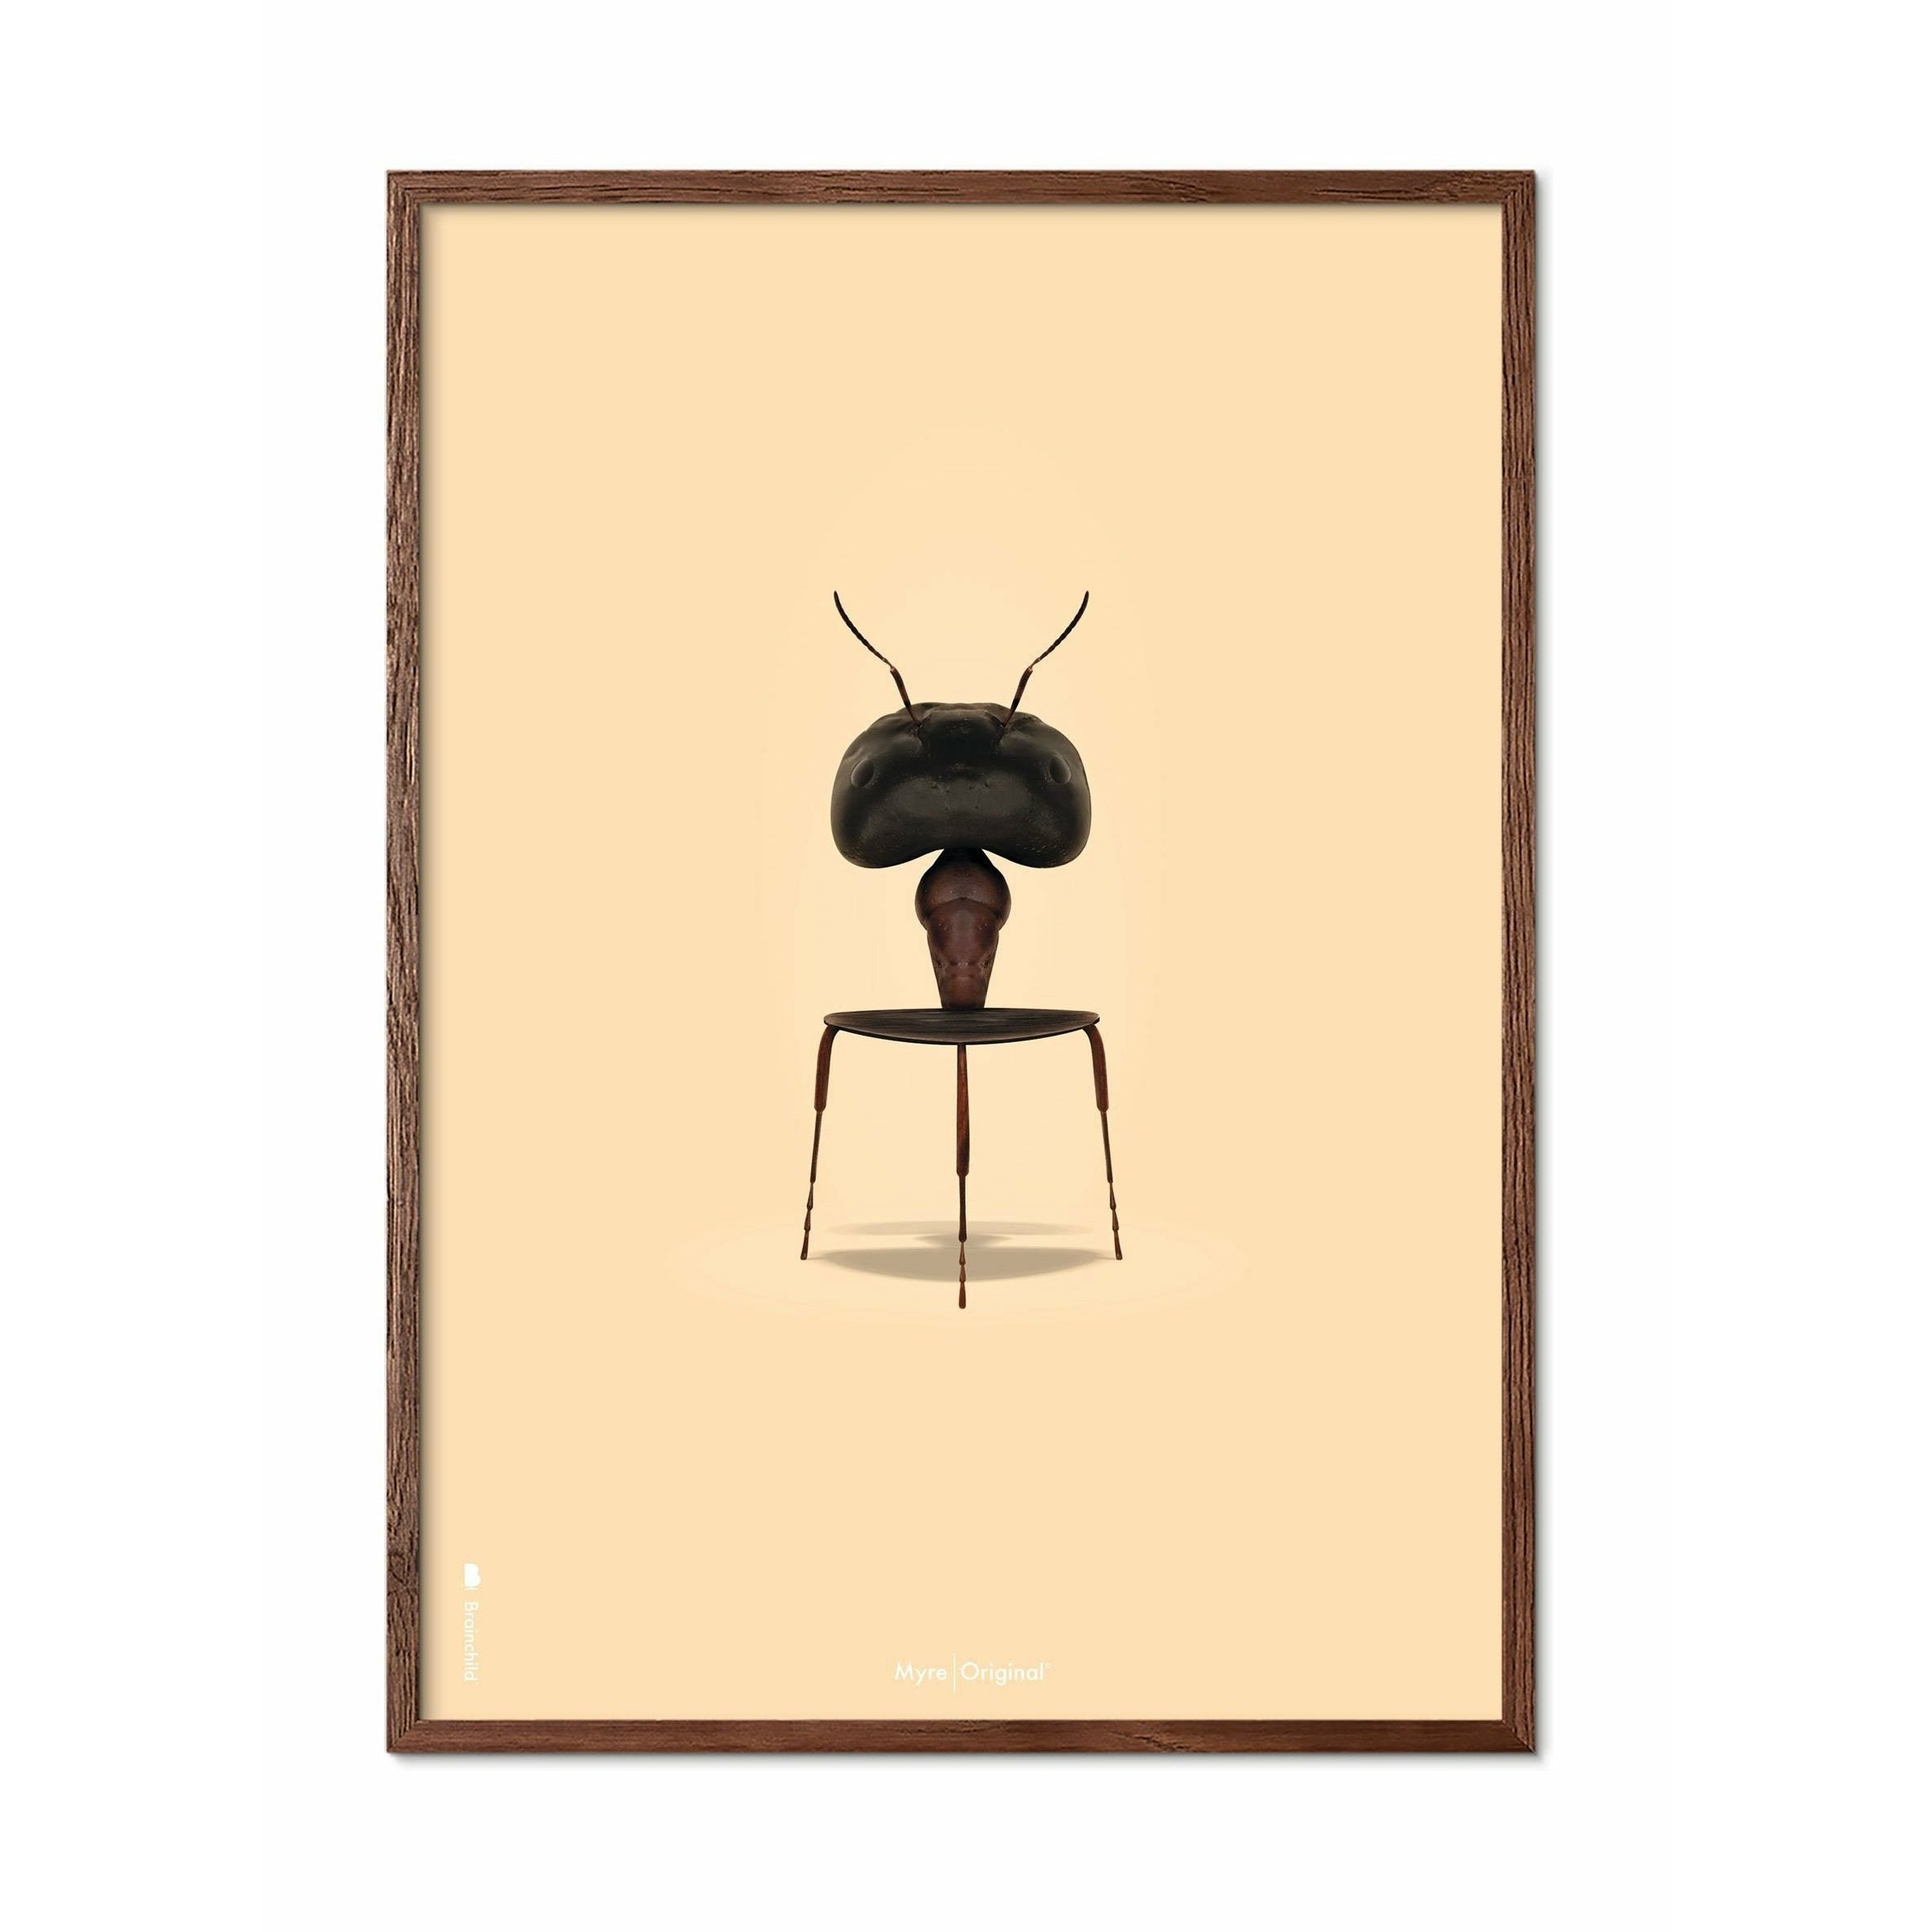 Brainchild Ant Classic plakát, tmavý dřevěný rám 30x40 cm, pískově barevné pozadí